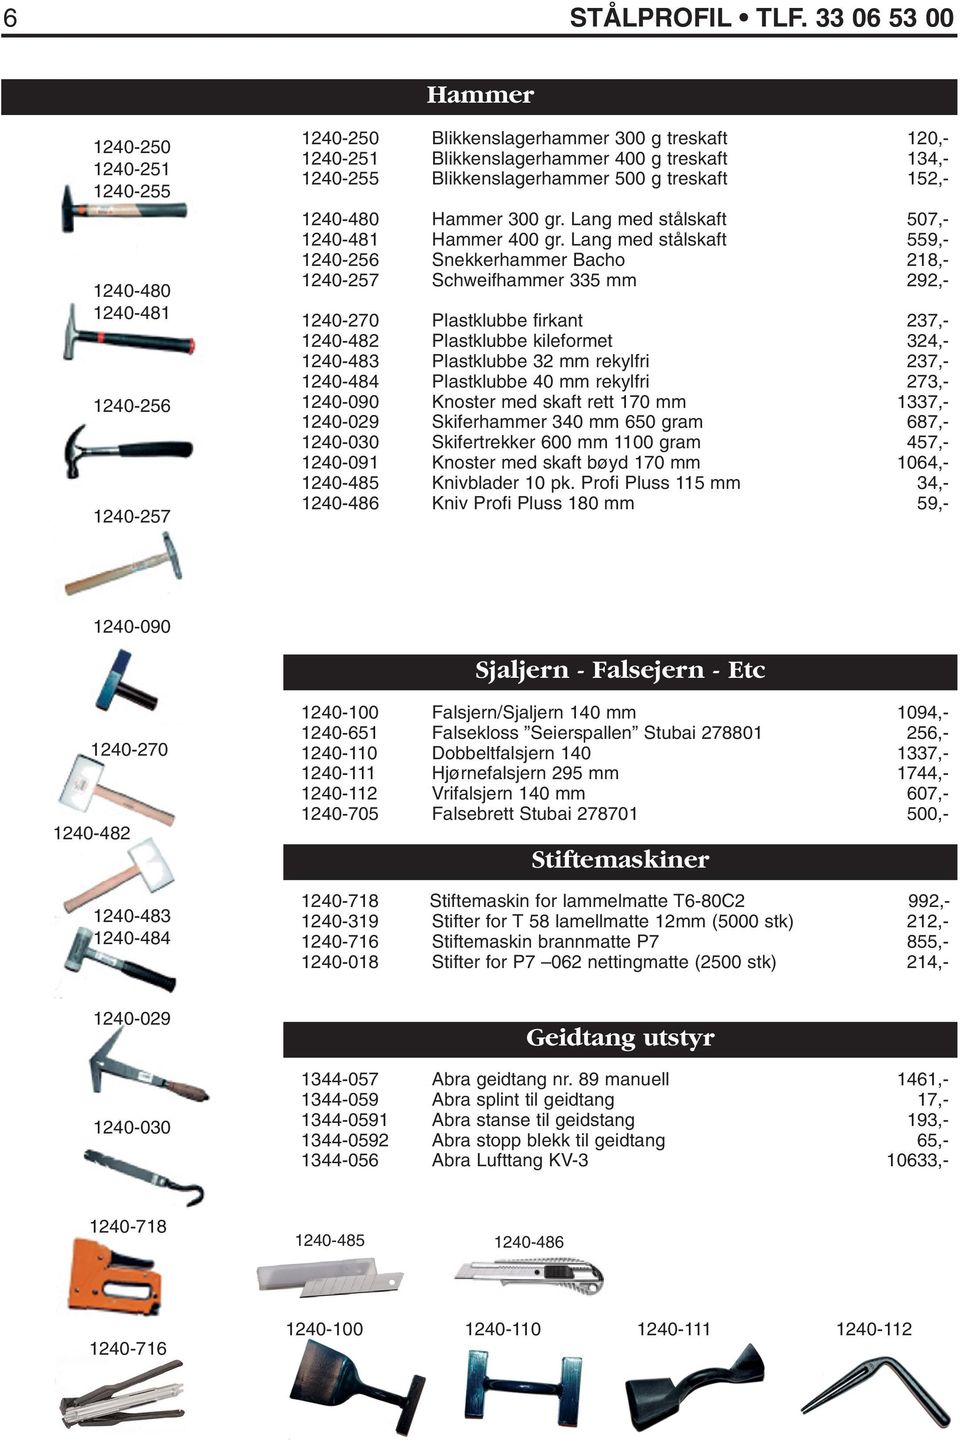 Blikkenslagerhammer 500 g treskaft 152,- 1240-480 Hammer 300 gr. Lang med stålskaft 507,- 1240-481 Hammer 400 gr.